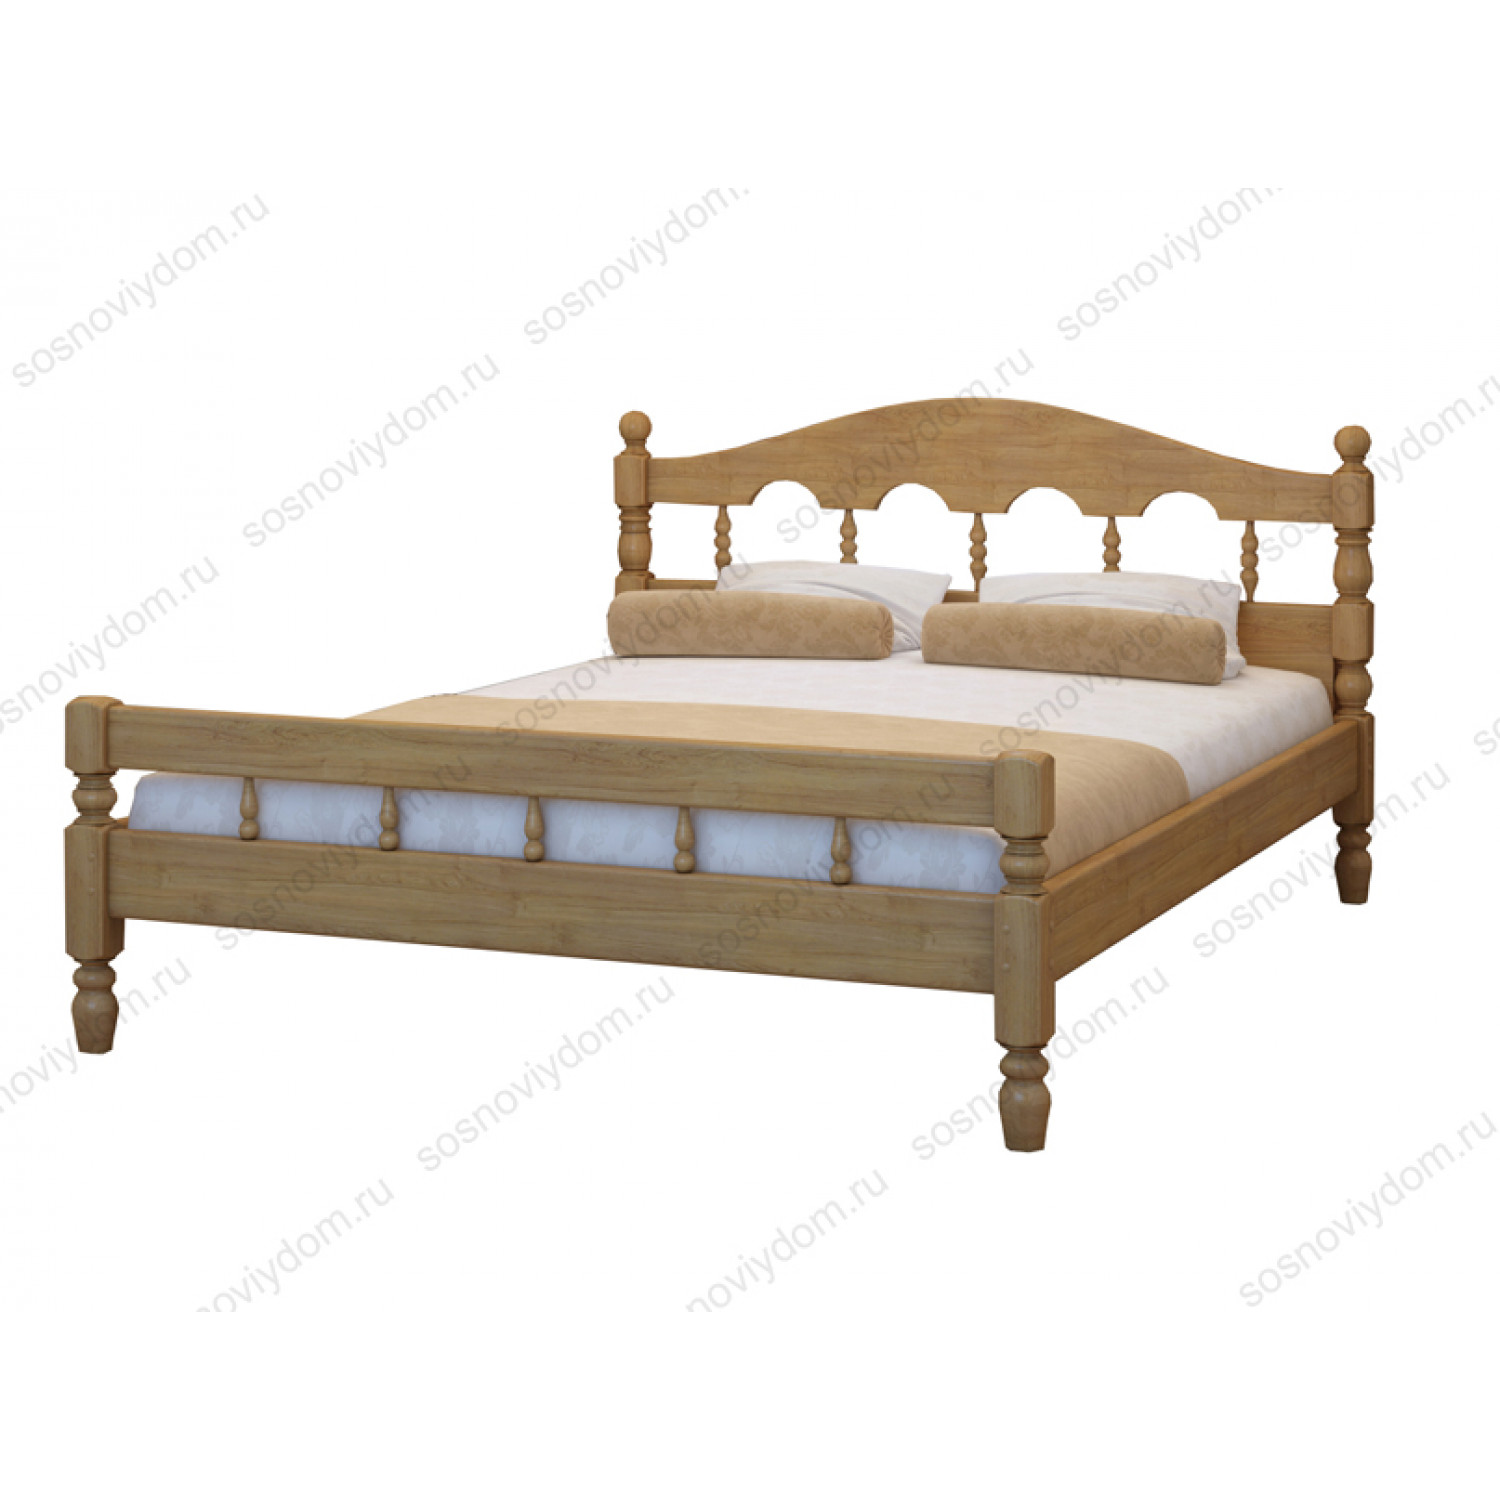 Купить кровать из массива в спб. Кровать Точенка 140 2000. Кровать Точенка из массива дерева. Кровать Точенка из сосны. Кровать Точенка Муром.